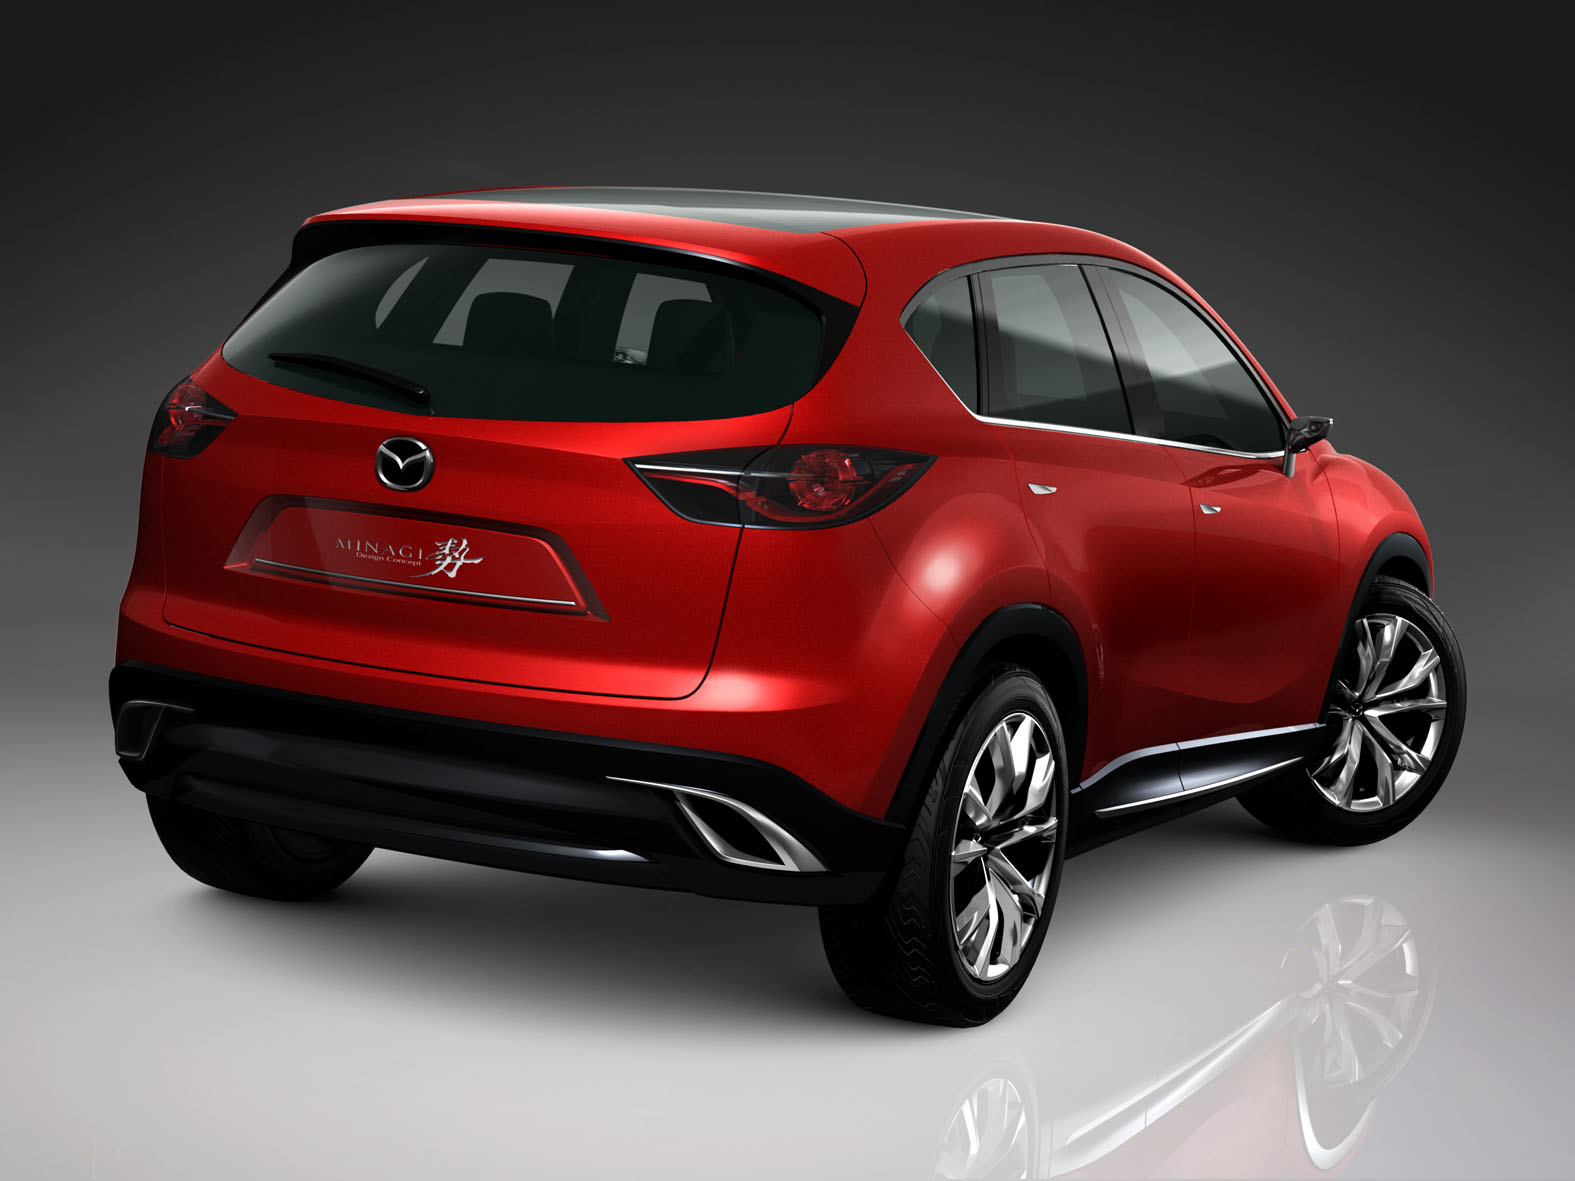 2011 NY Auto Show: Mazda Minagi Concept Makes North ...